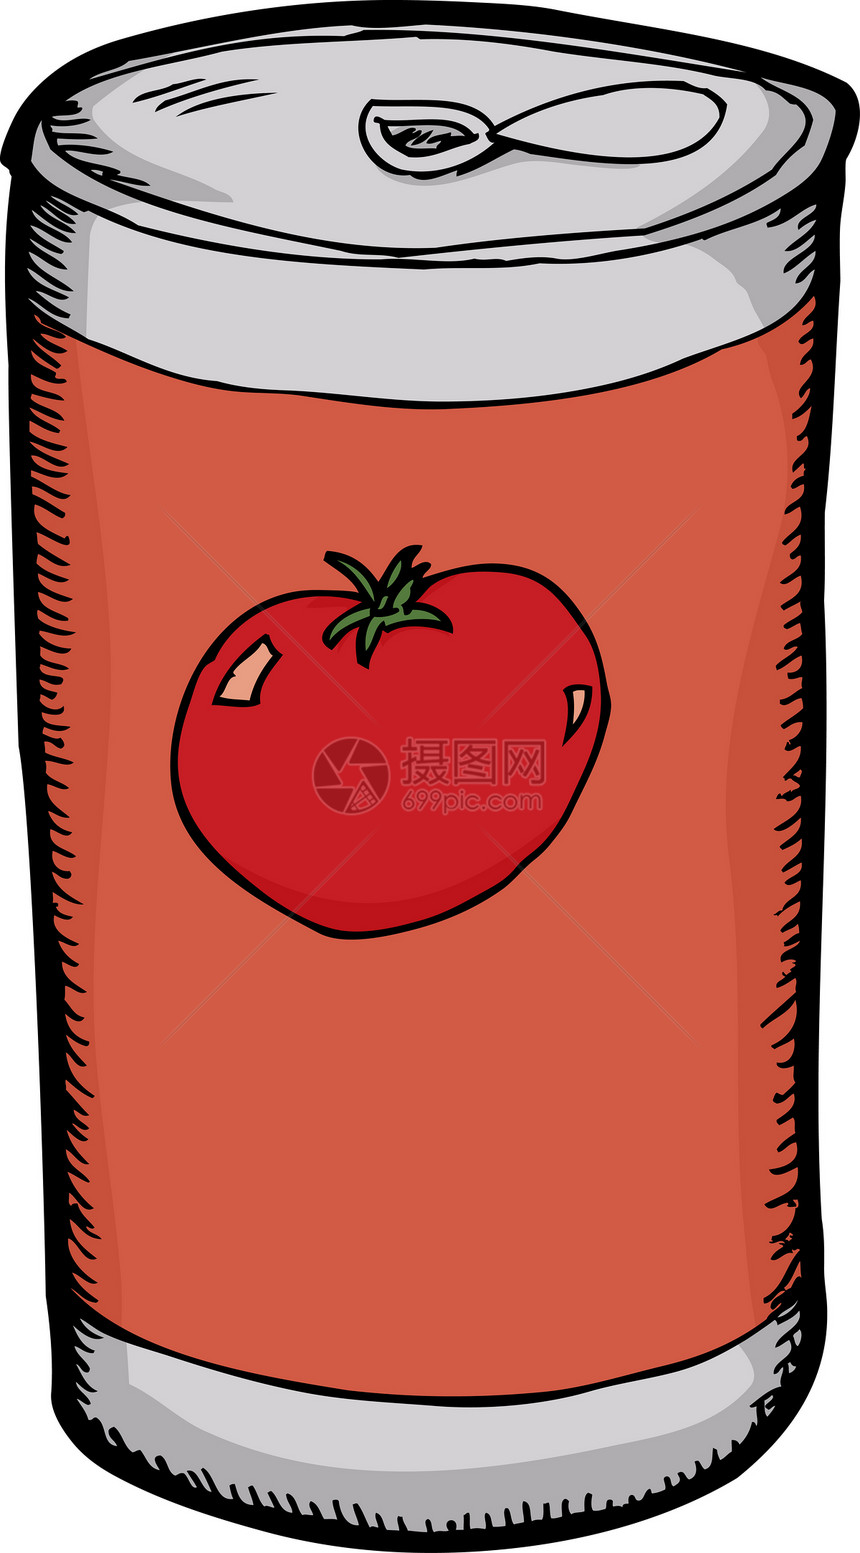 番茄汁罐头图片